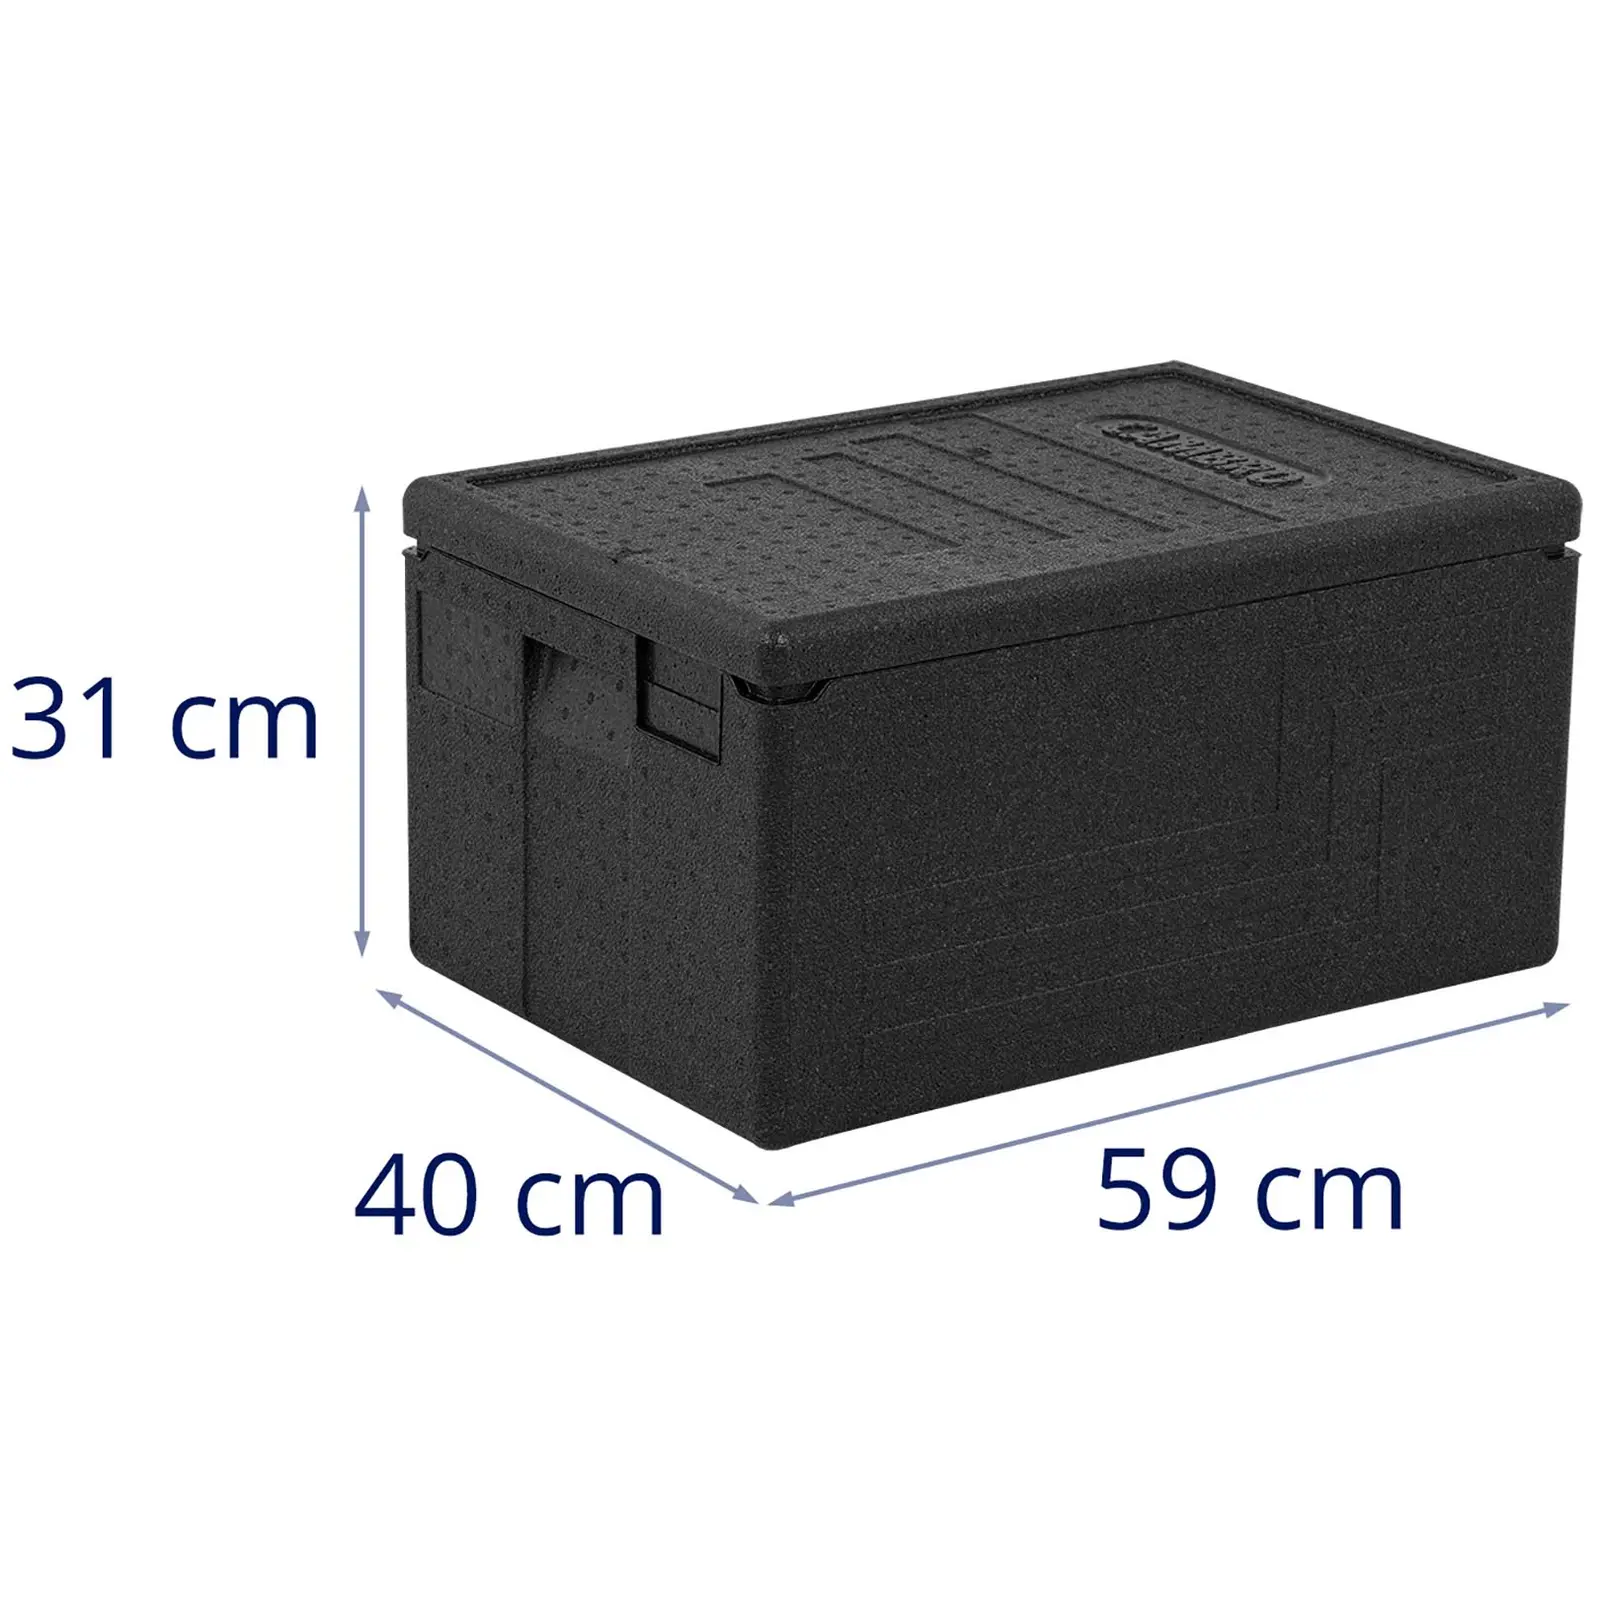 Termobox - nádoba GN 1/1 (hĺbka 20 cm) - podstavec